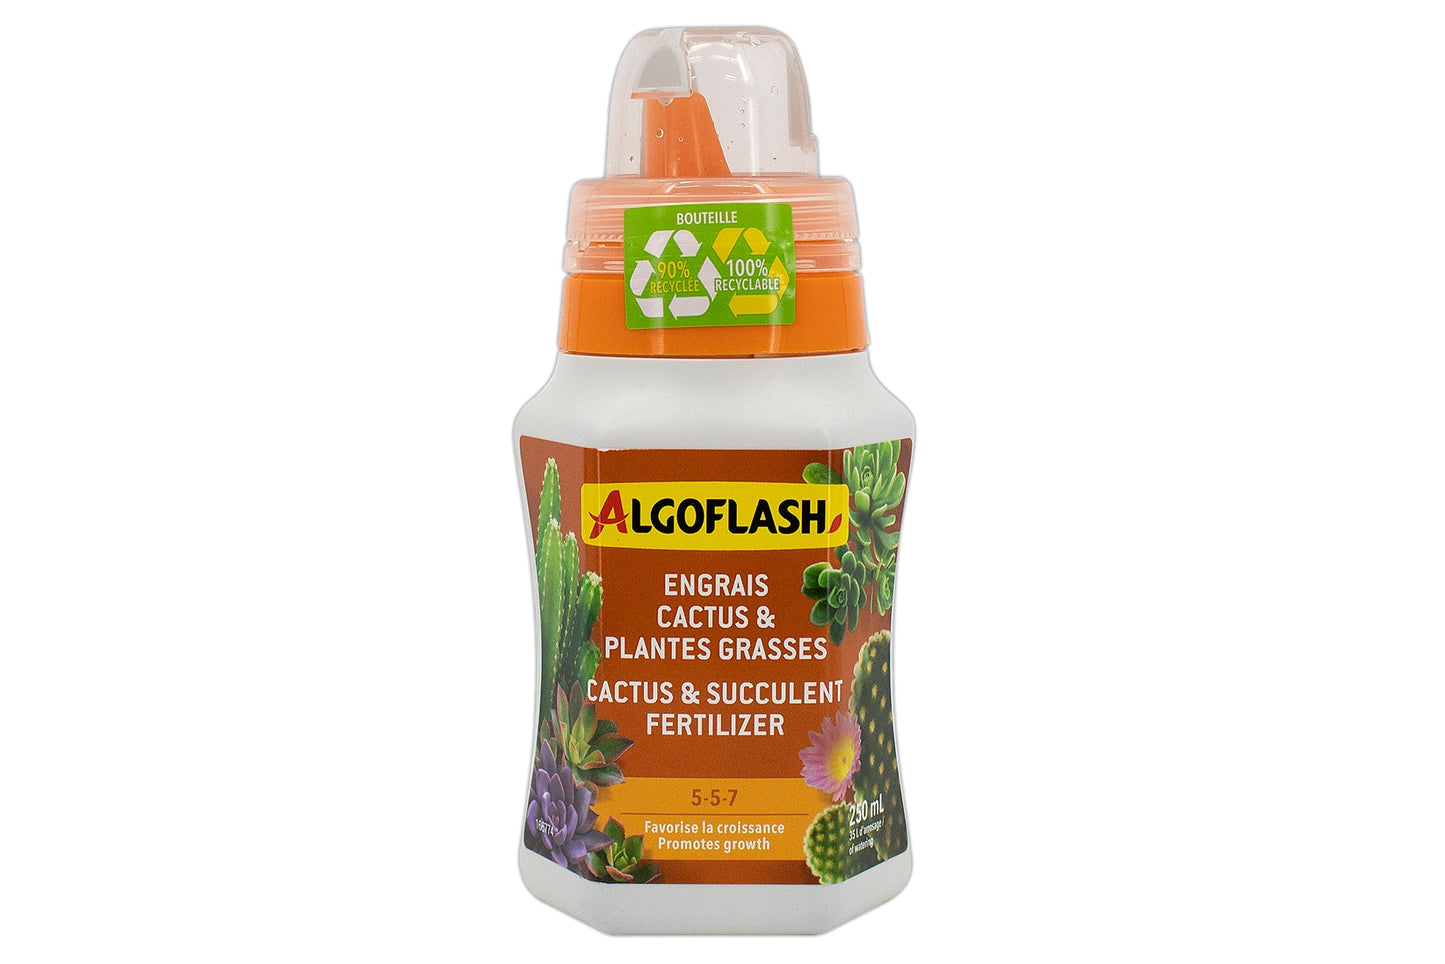 Algoflash liquid fertilizer for cactus and succulents 5-5-7